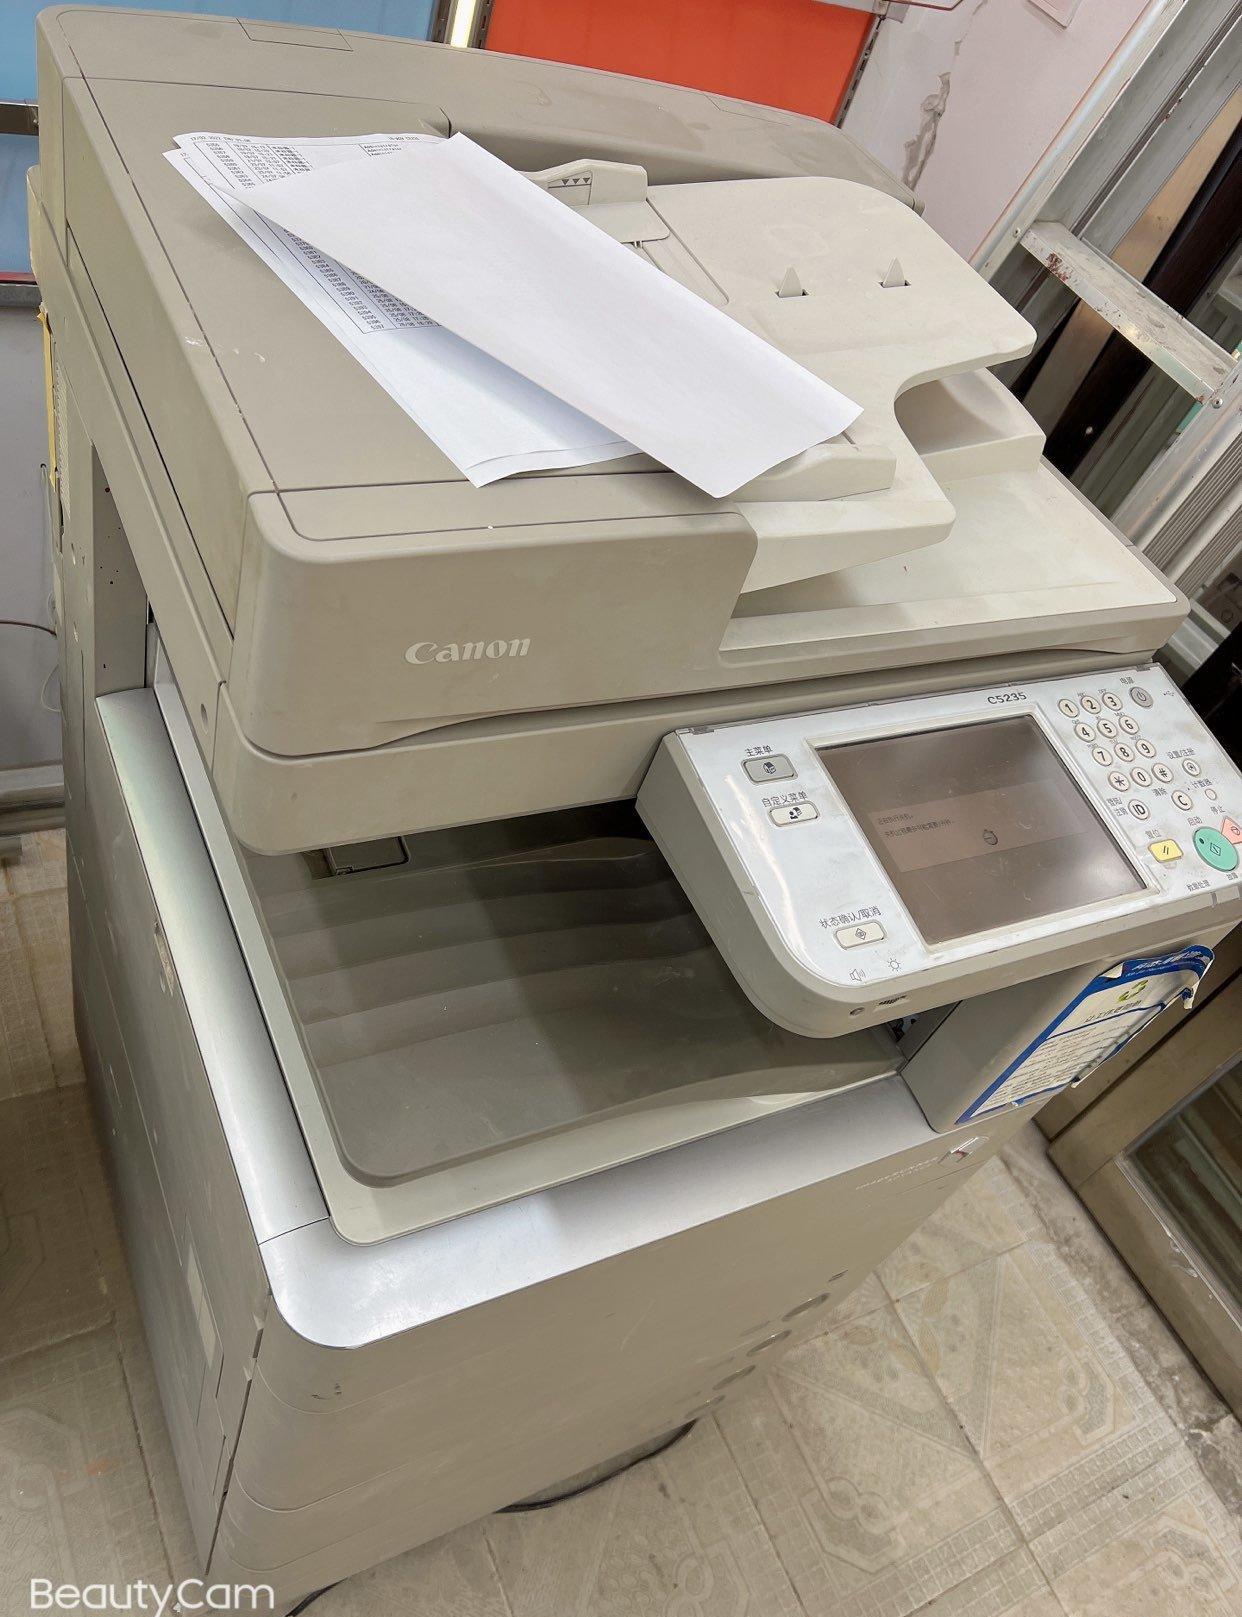 打印机输稿器有两个_打印机带输稿器是什么意思_打印机输稿器有用吗